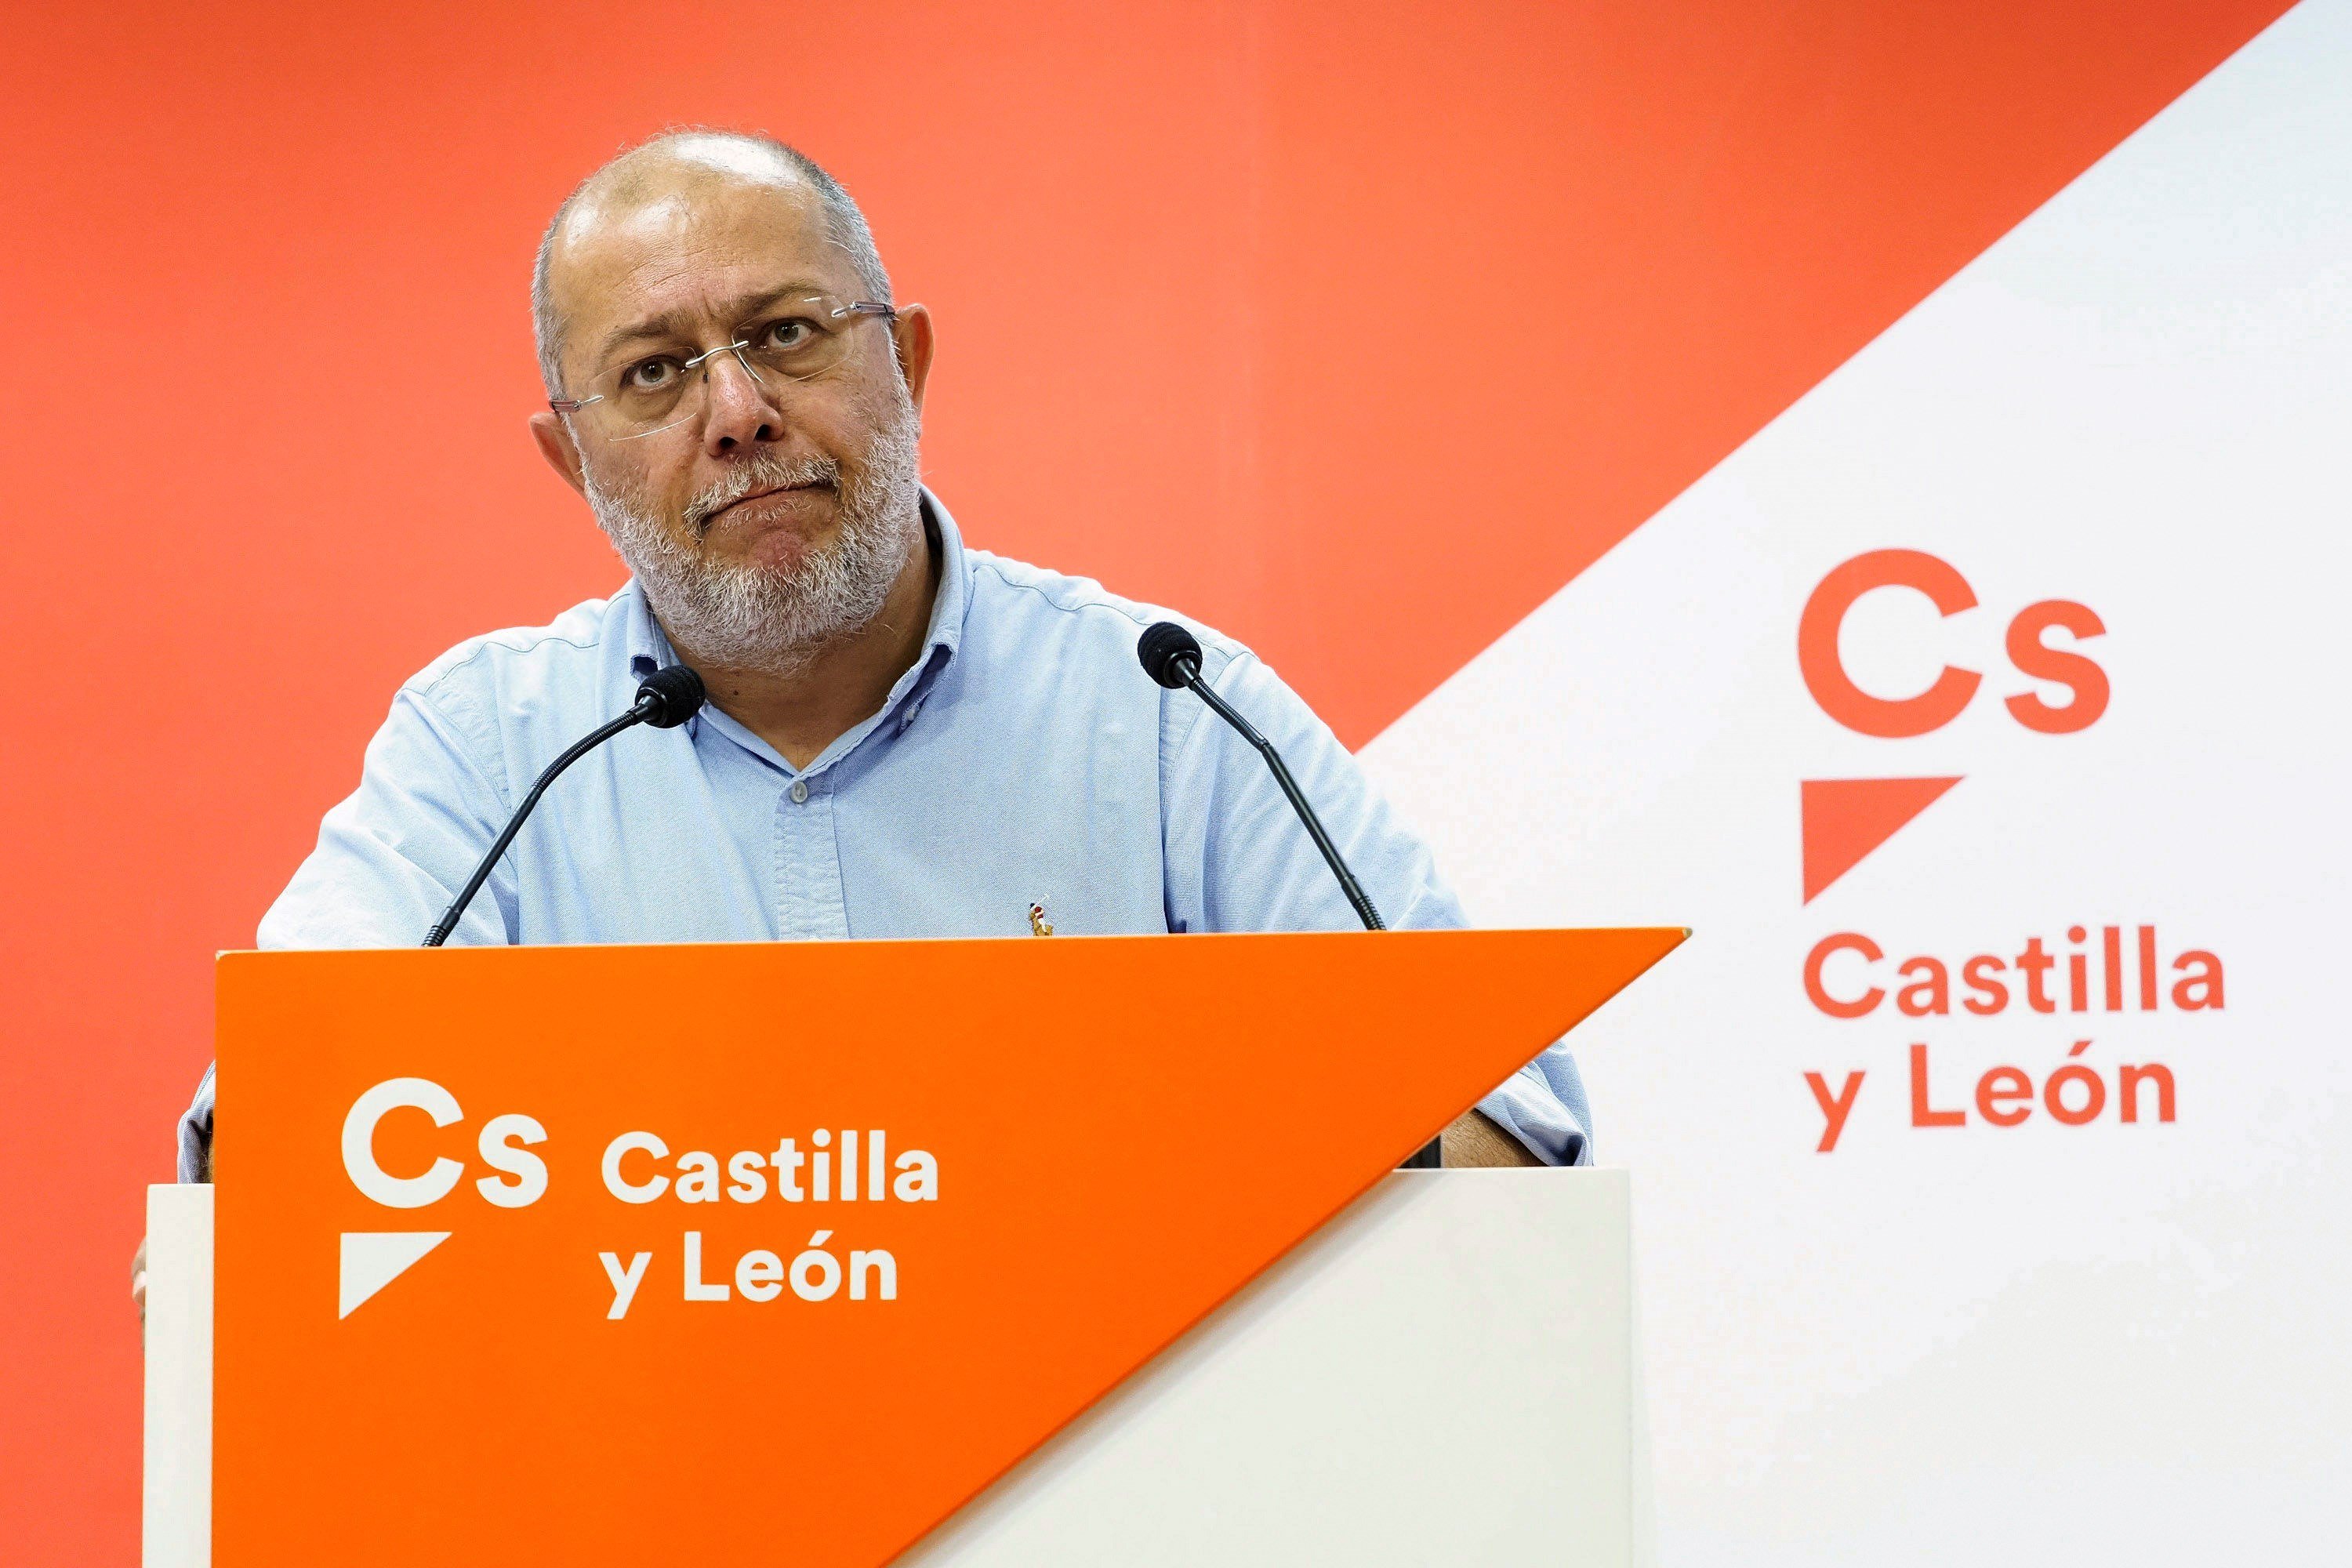 El crítico Igea defiende la abstención de Cs a la investidura de Sánchez